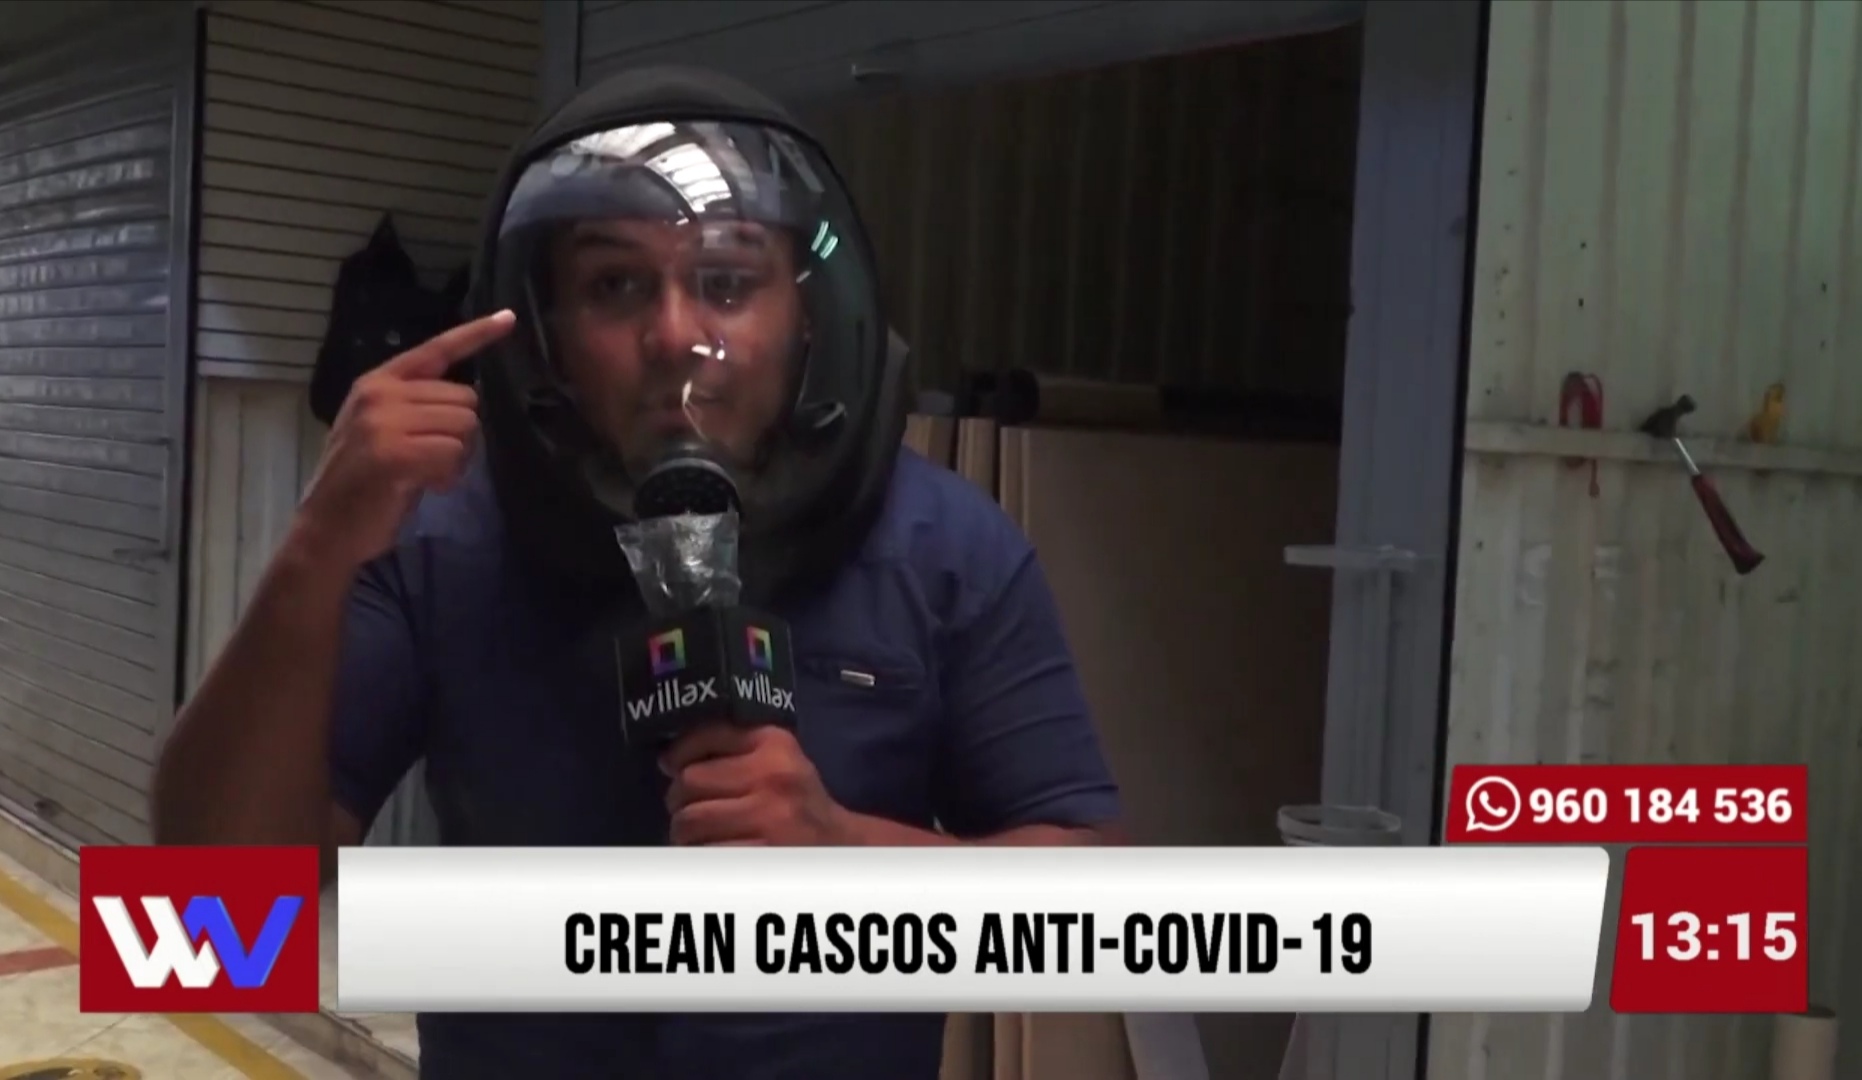 Crean cascos anti-Covid-19